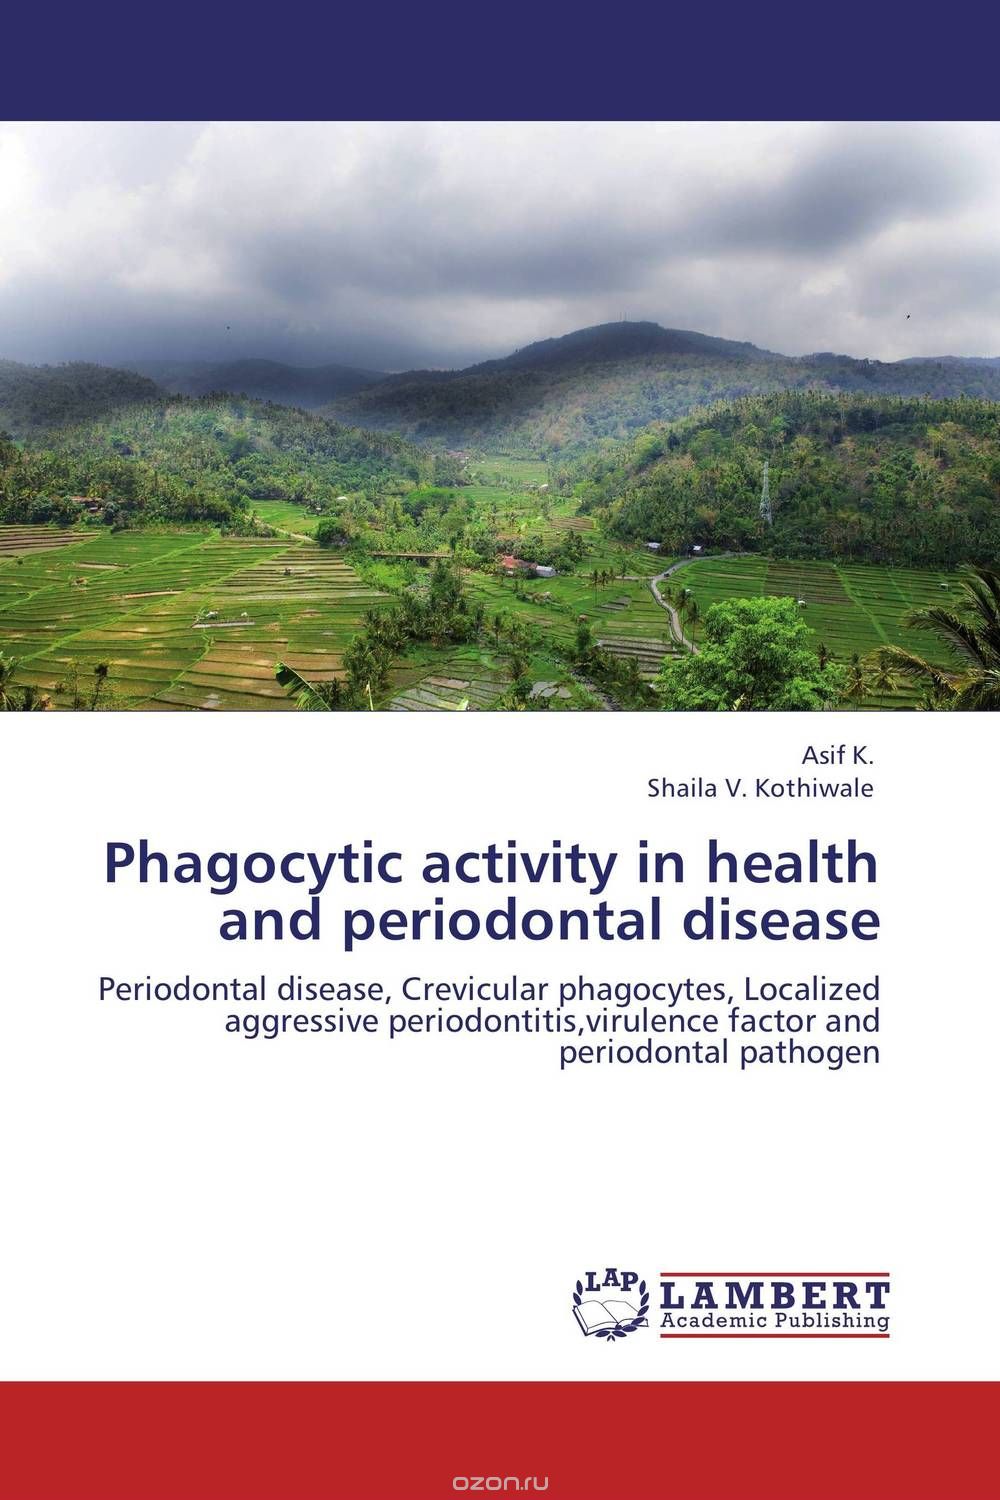 Скачать книгу "Phagocytic activity  in health and periodontal disease"